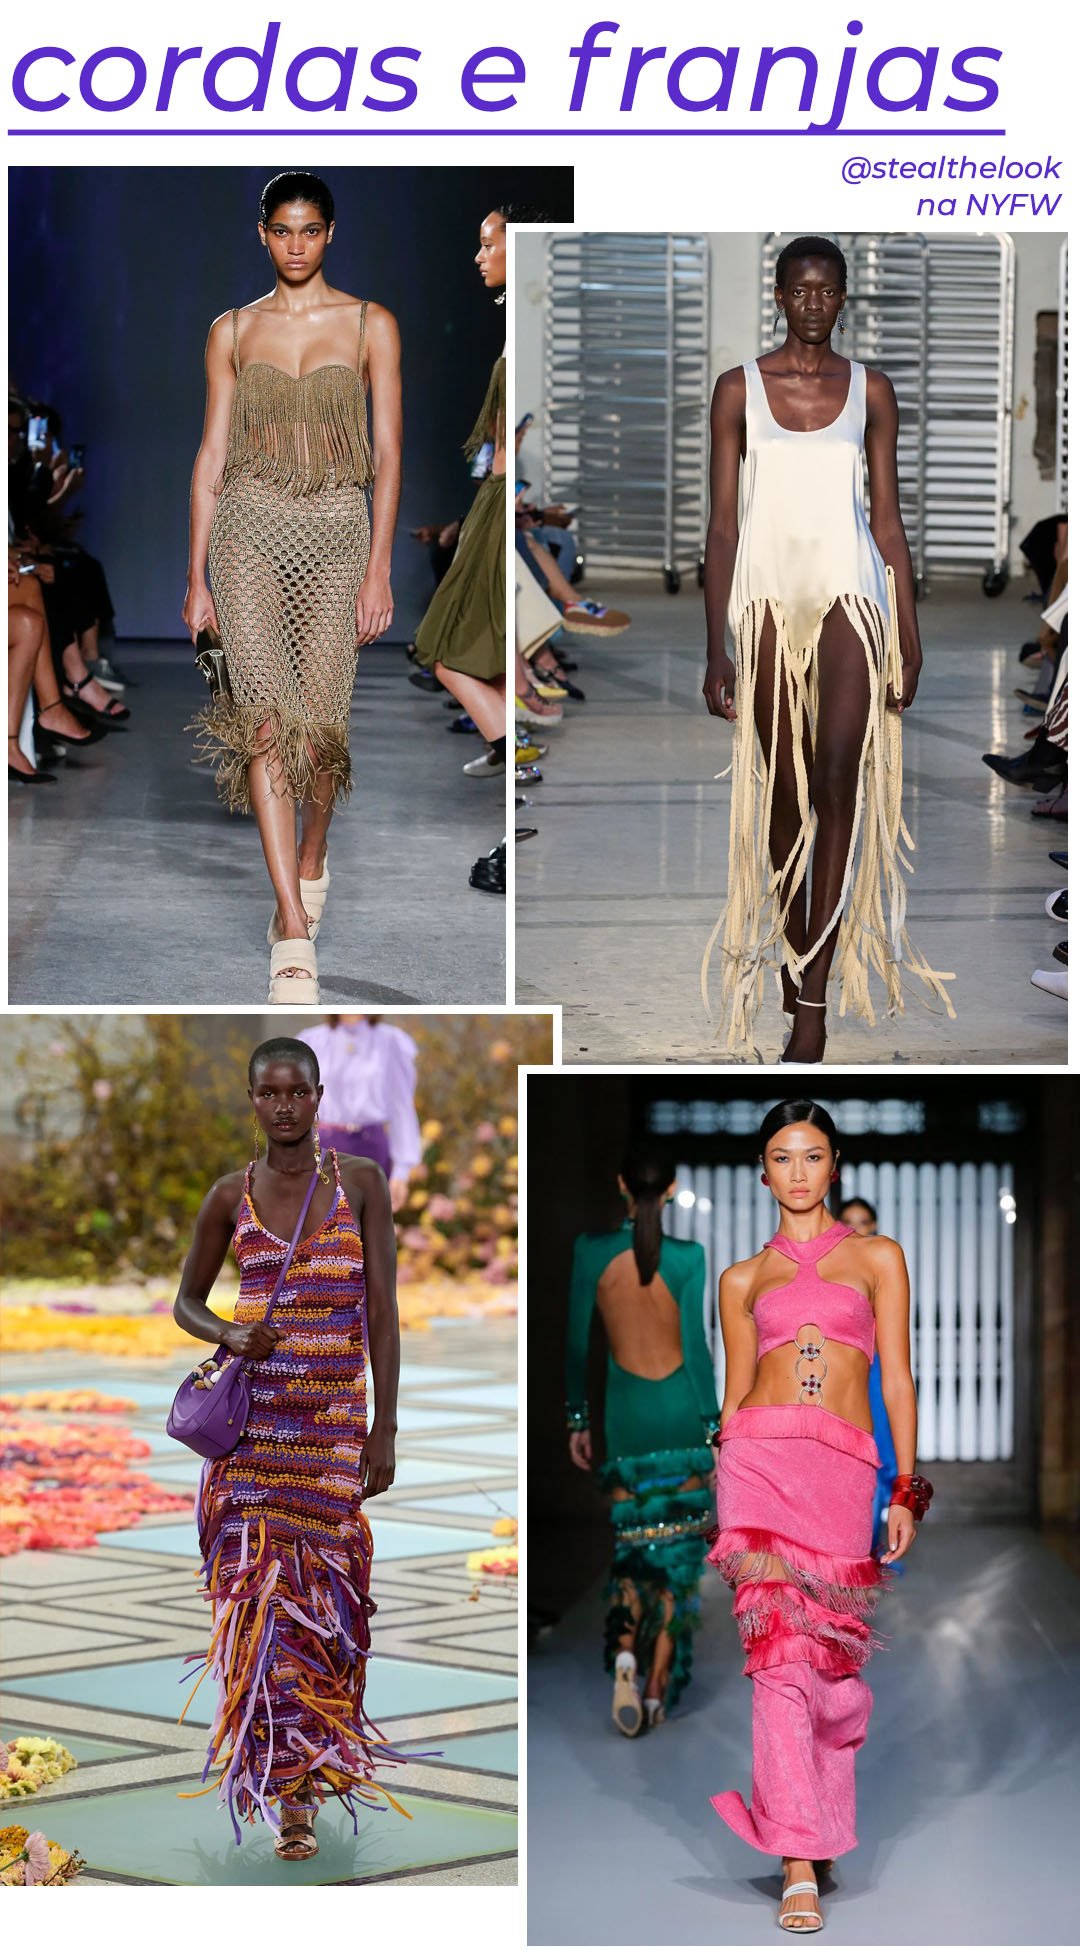 Proenza Schouler - saia de corda dourada e top de franjas - tendências de moda - Primavera - modelo andando pela passarela - https://stealthelook.com.br